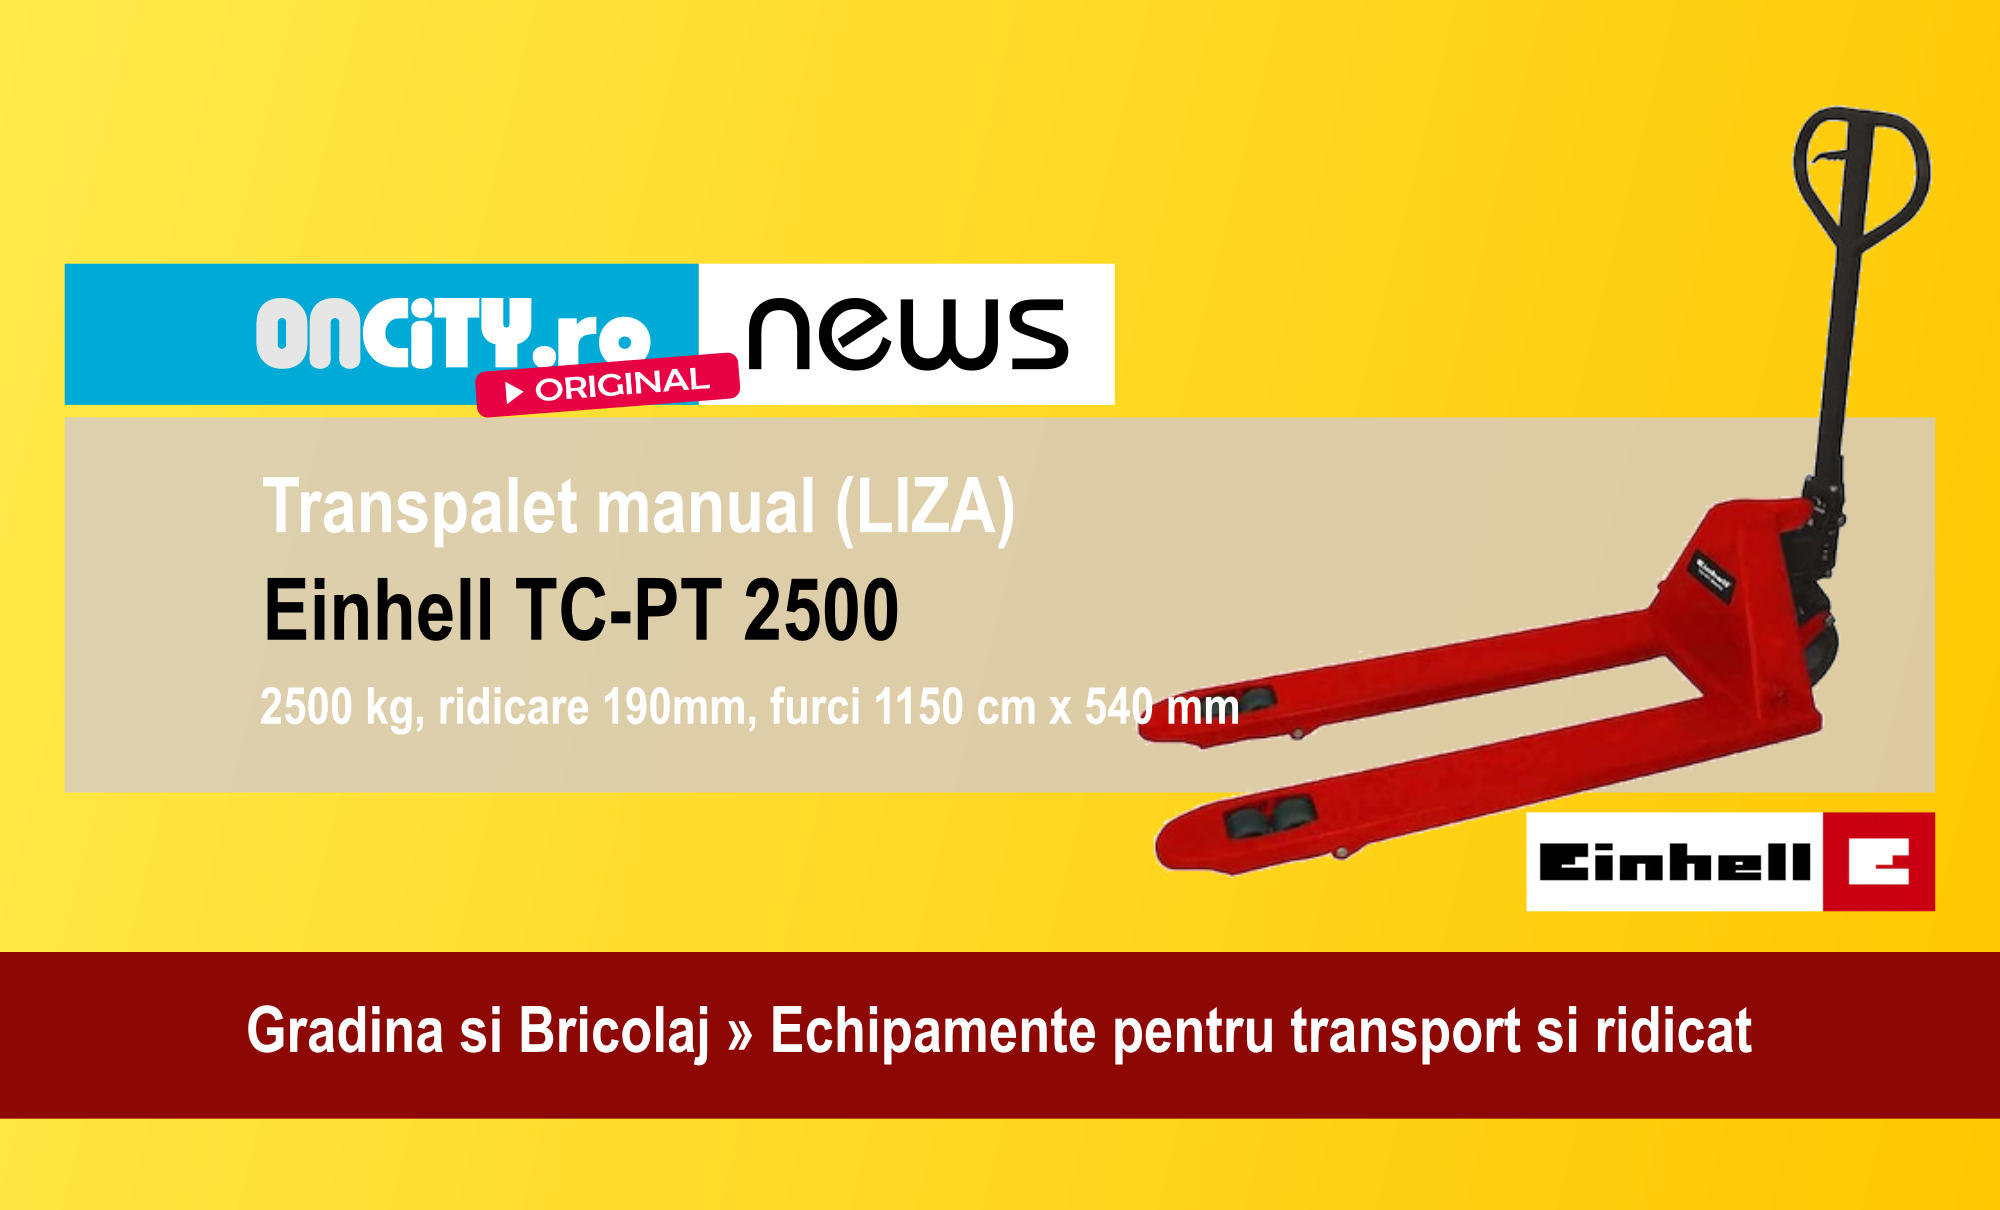 Transpaleta manuala (LIZA) Einhell TC-PT 2500, un ajutor neobosit pentru lucrari in atelier, depozit si transport